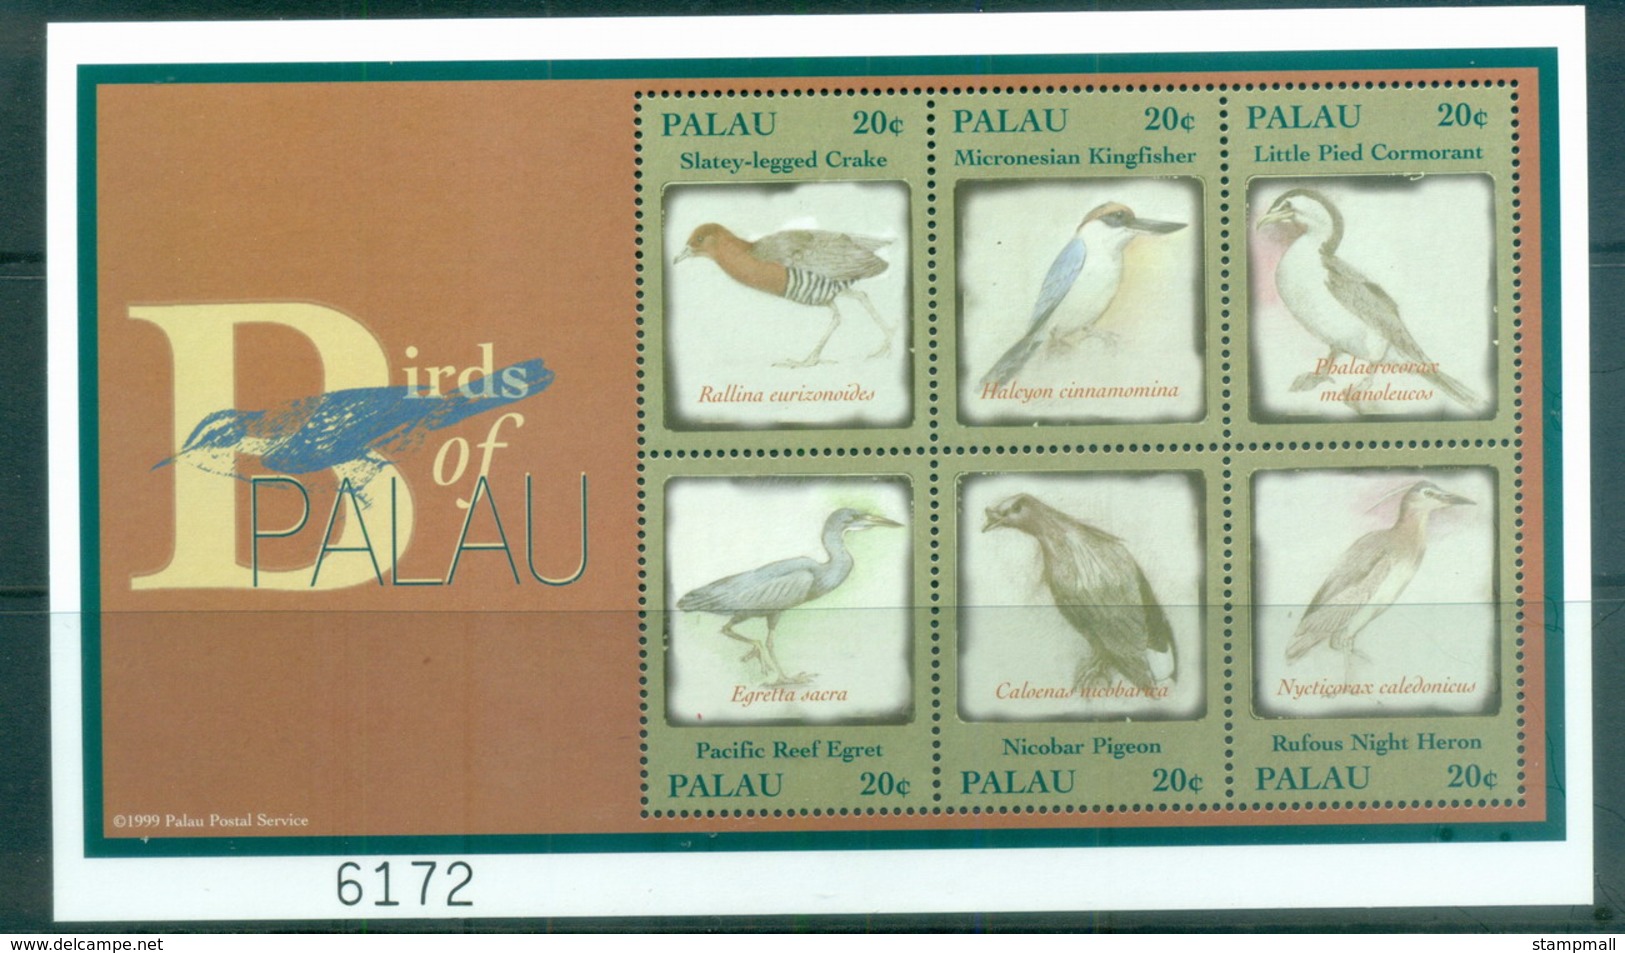 Palau 2000 Birds Of Palau MS MUH - Palau